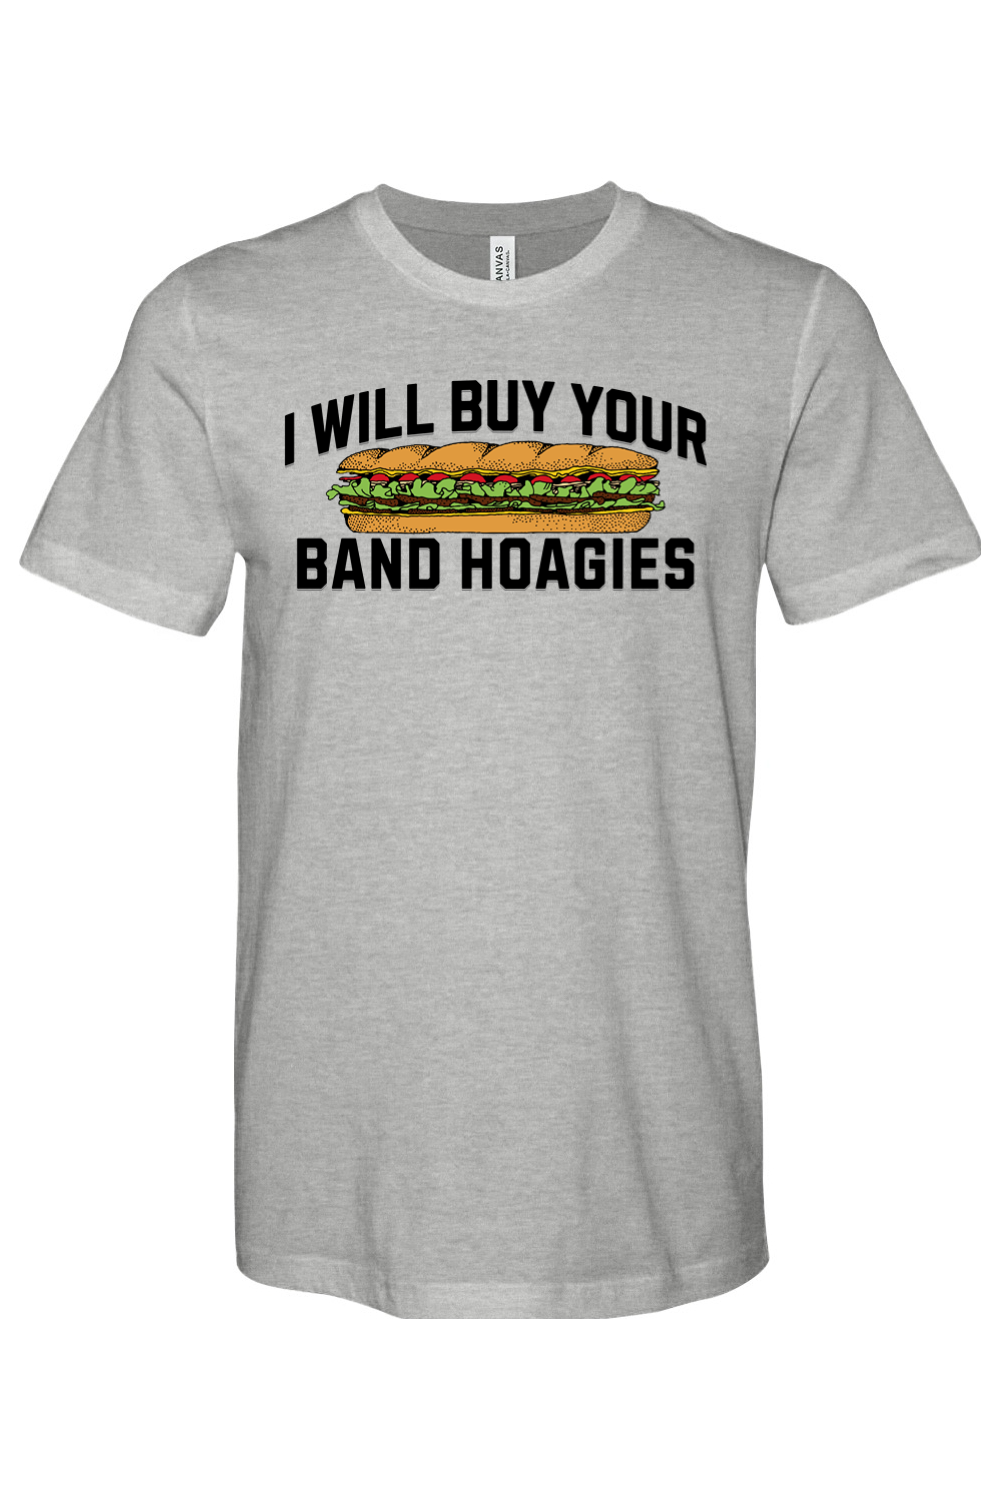 I Buy Band Hoagies - Yinzylvania